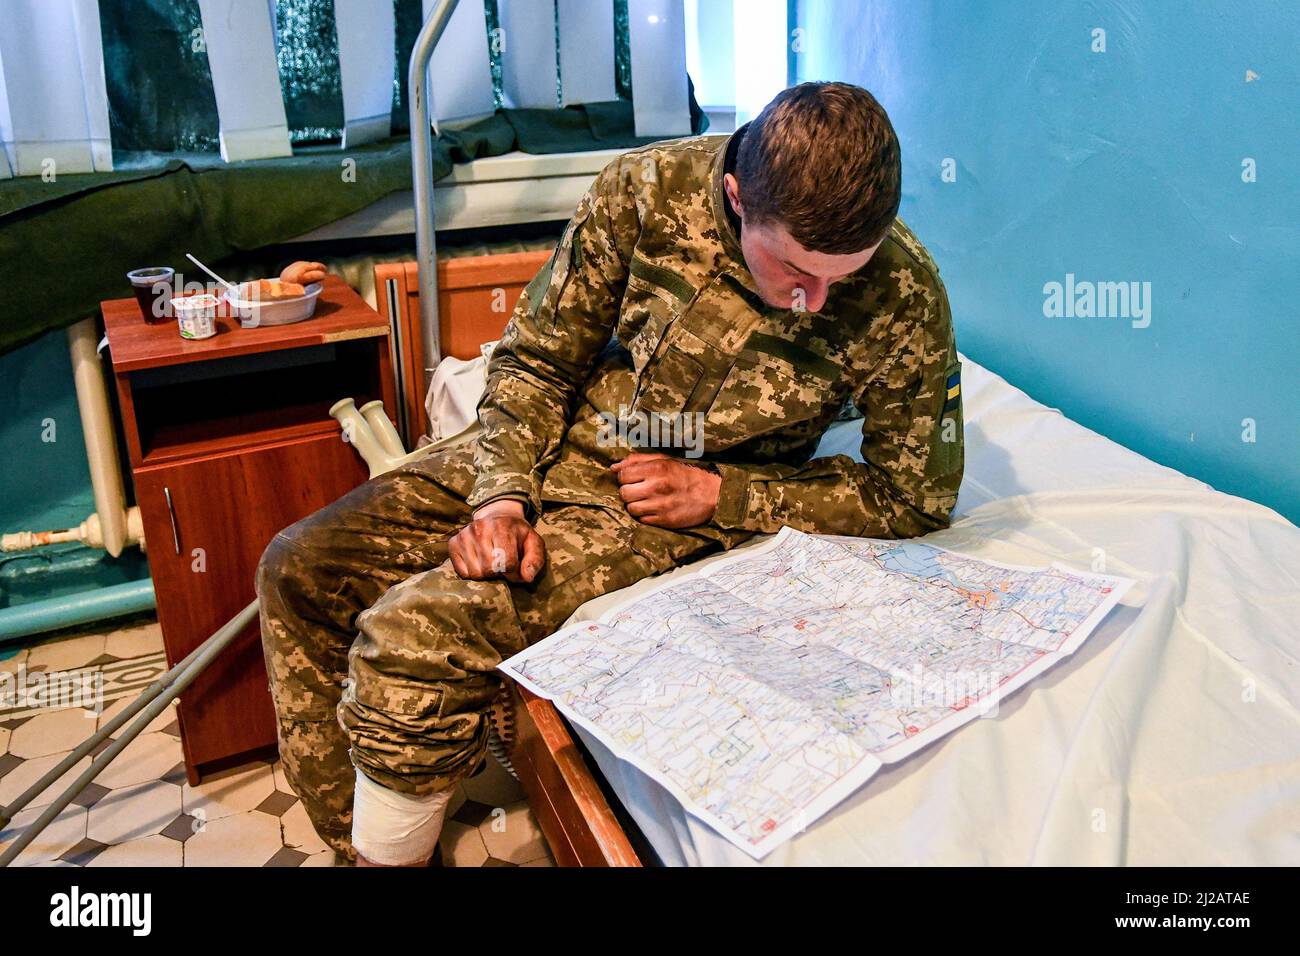 ZAPORIZHZHIA, UKRAINE - 29. MÄRZ 2022 - Soldat Andrii, 19, der aus seinem Bein ein Schrapnellstück herausnehmen ließ, studiert eine Karte eines Ortes, an dem er sich anschrecke Stockfoto